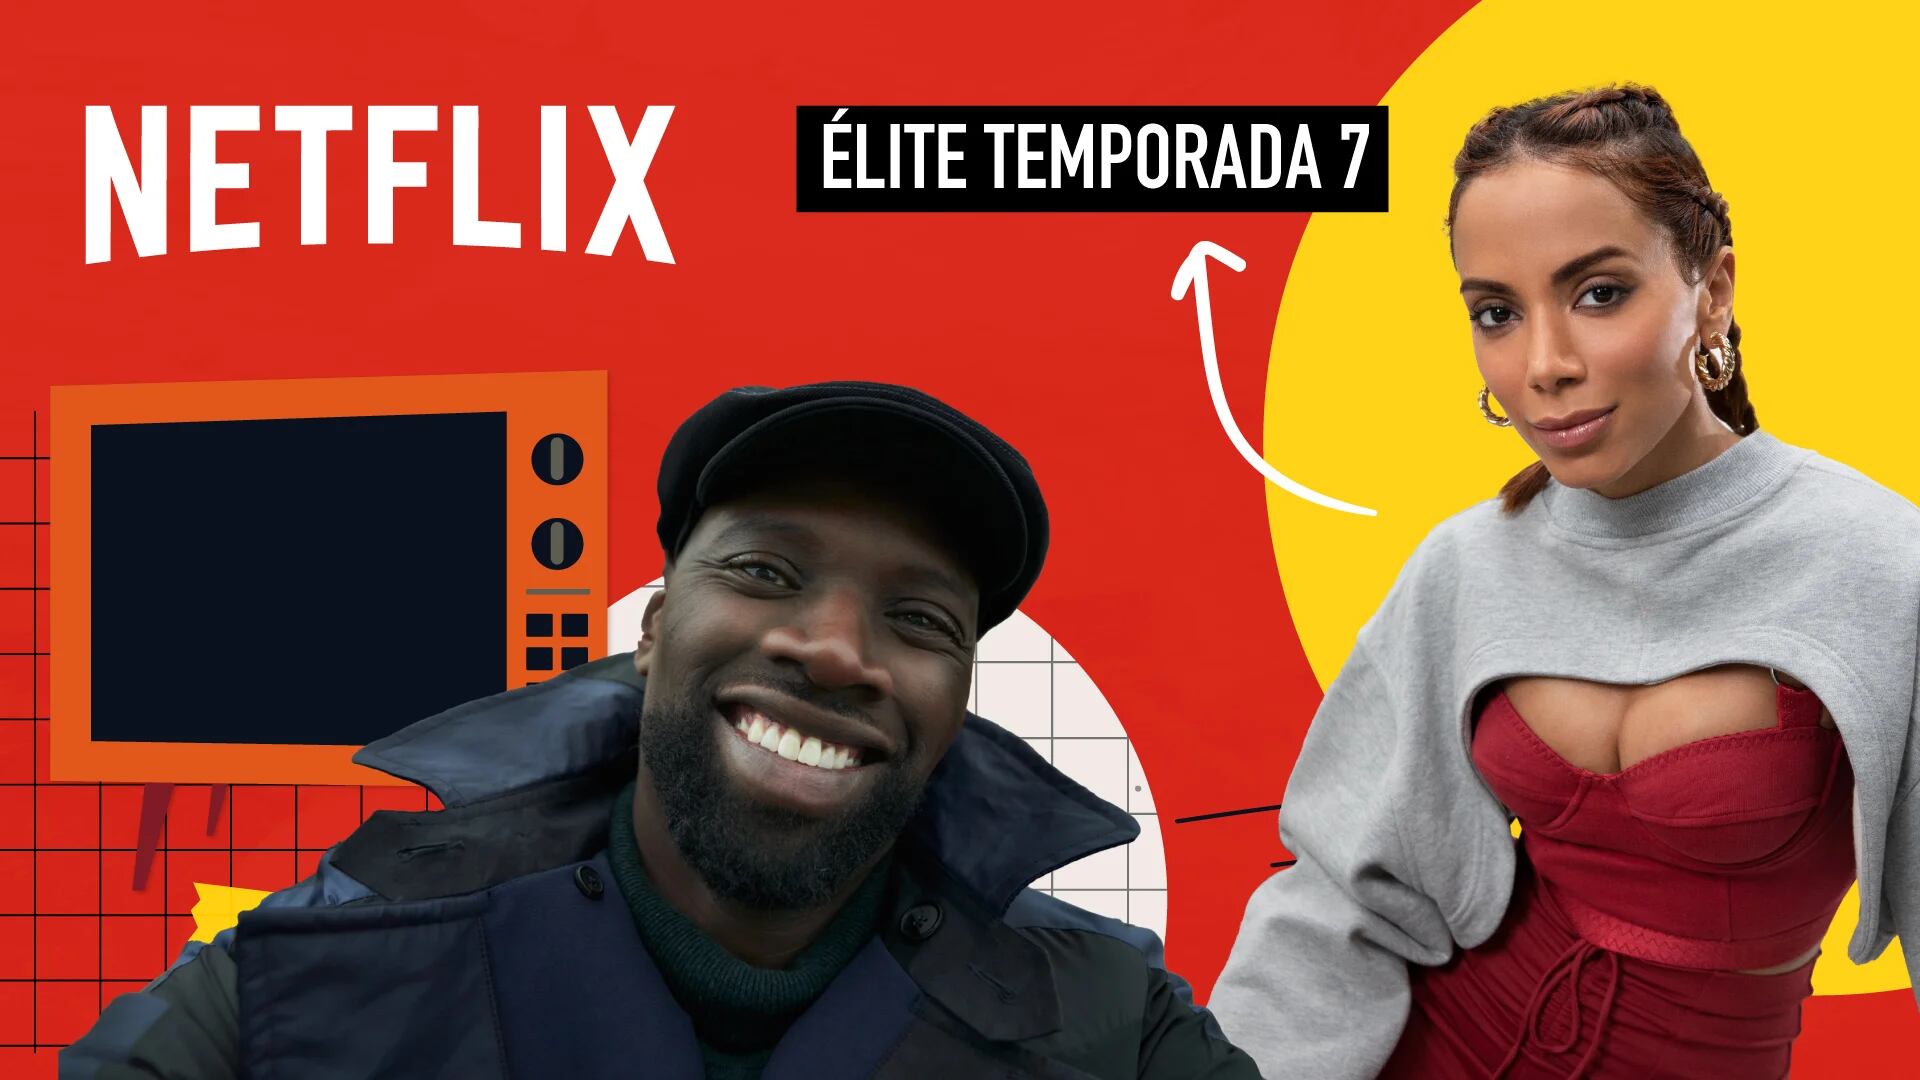 Estrenos de Netflix en octubre: “Lupin”, “Élite”, “La caída de la casa Usher” y más